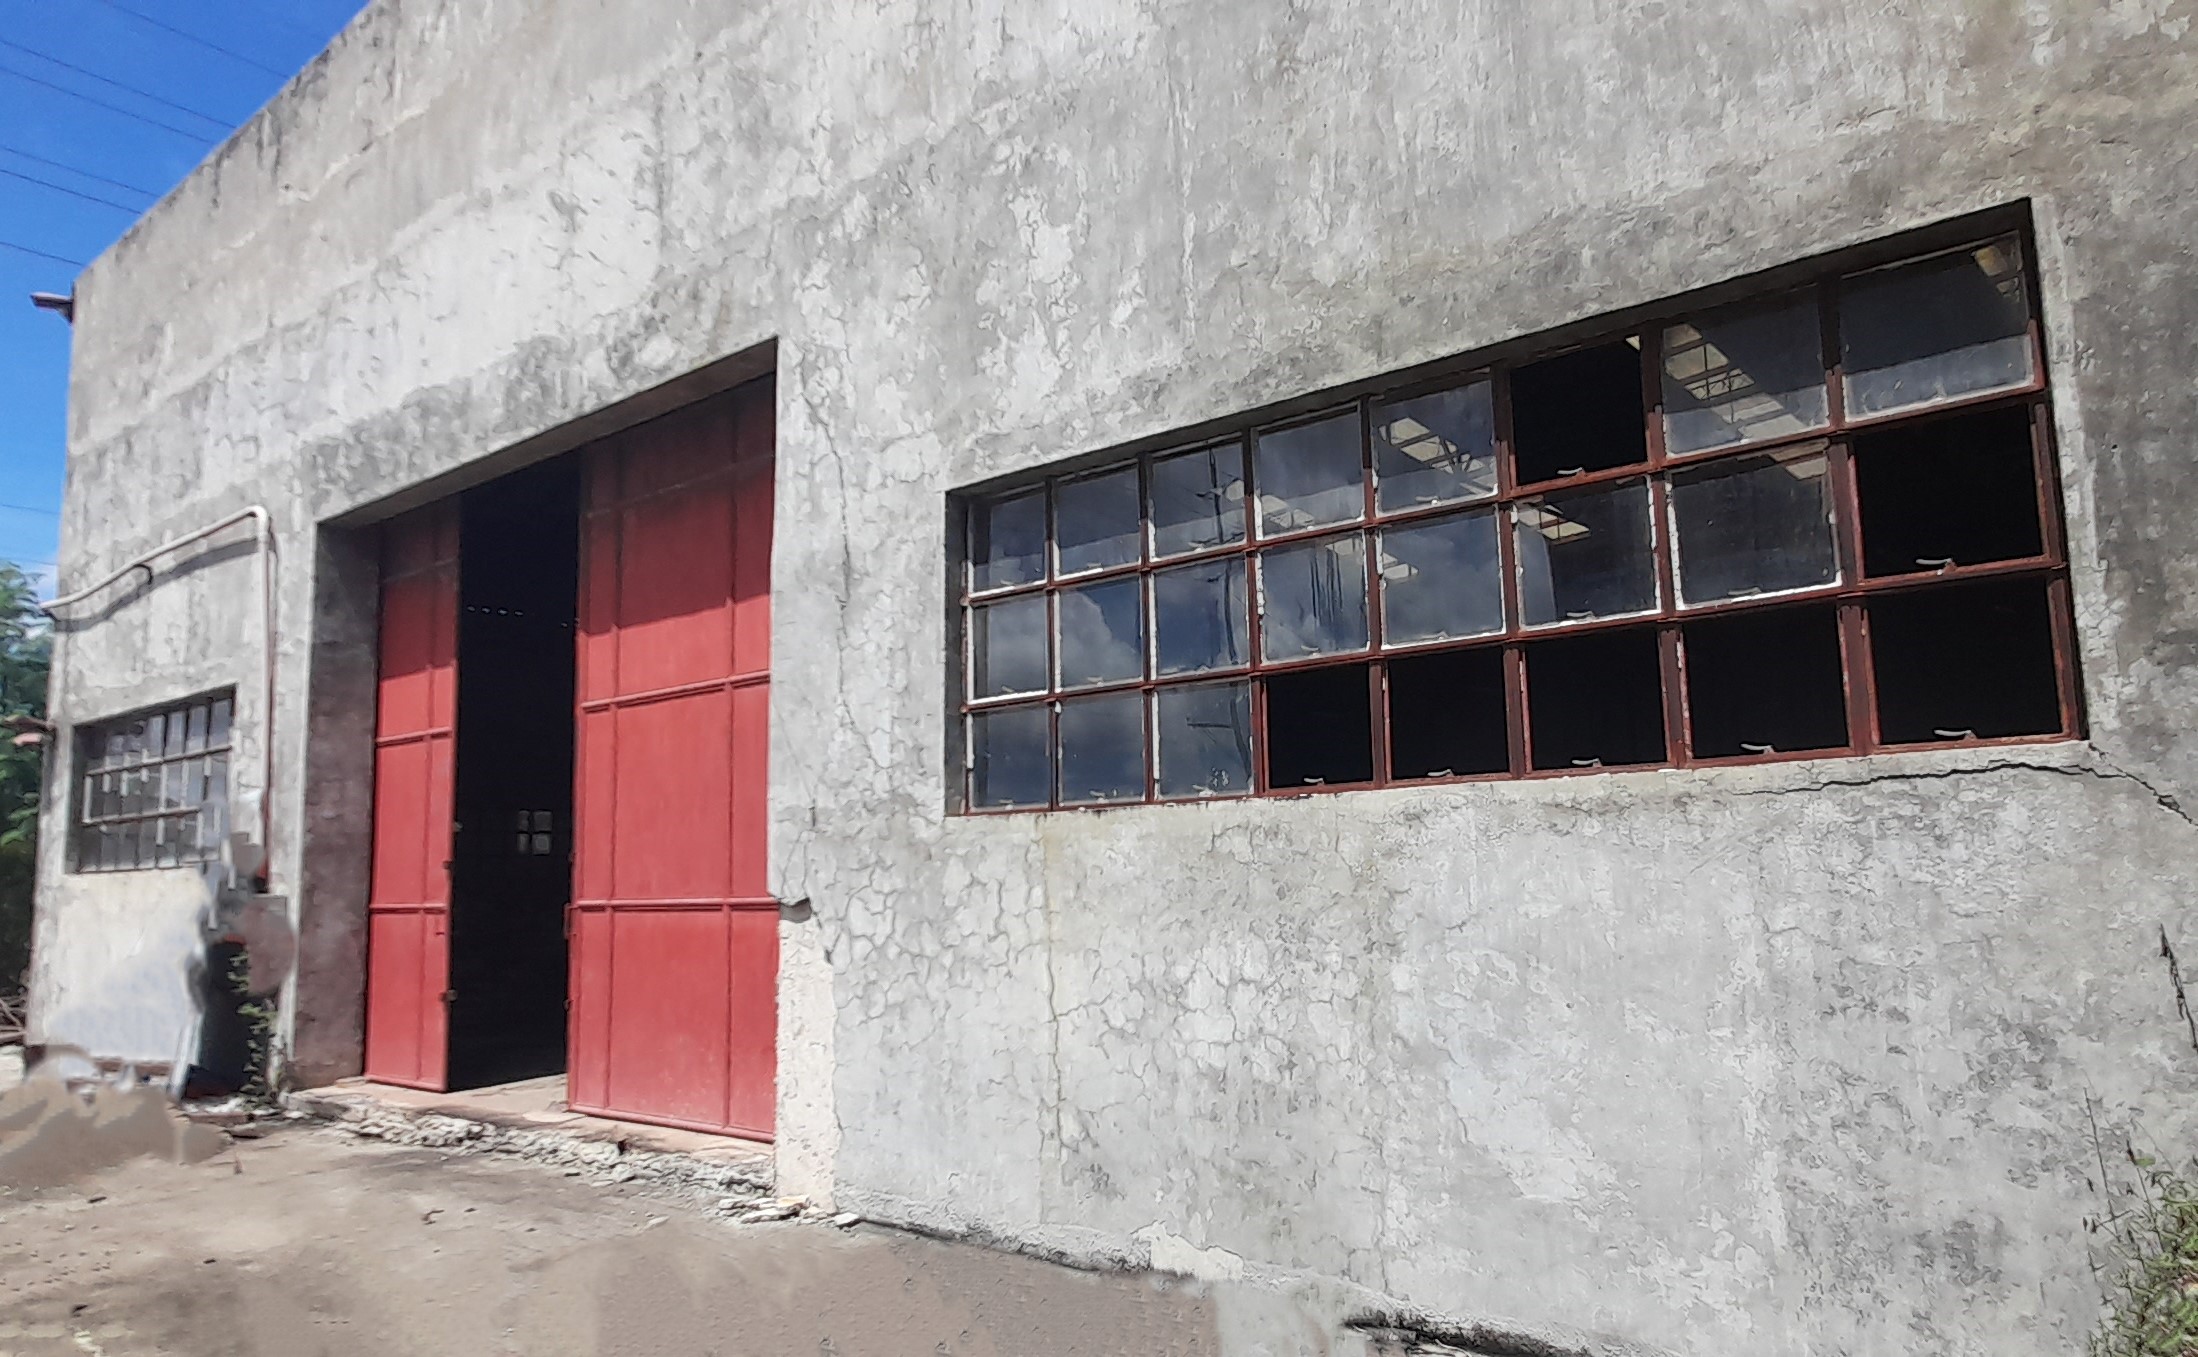 821-square-meters-warehouse-in-mandaue-city-cebu